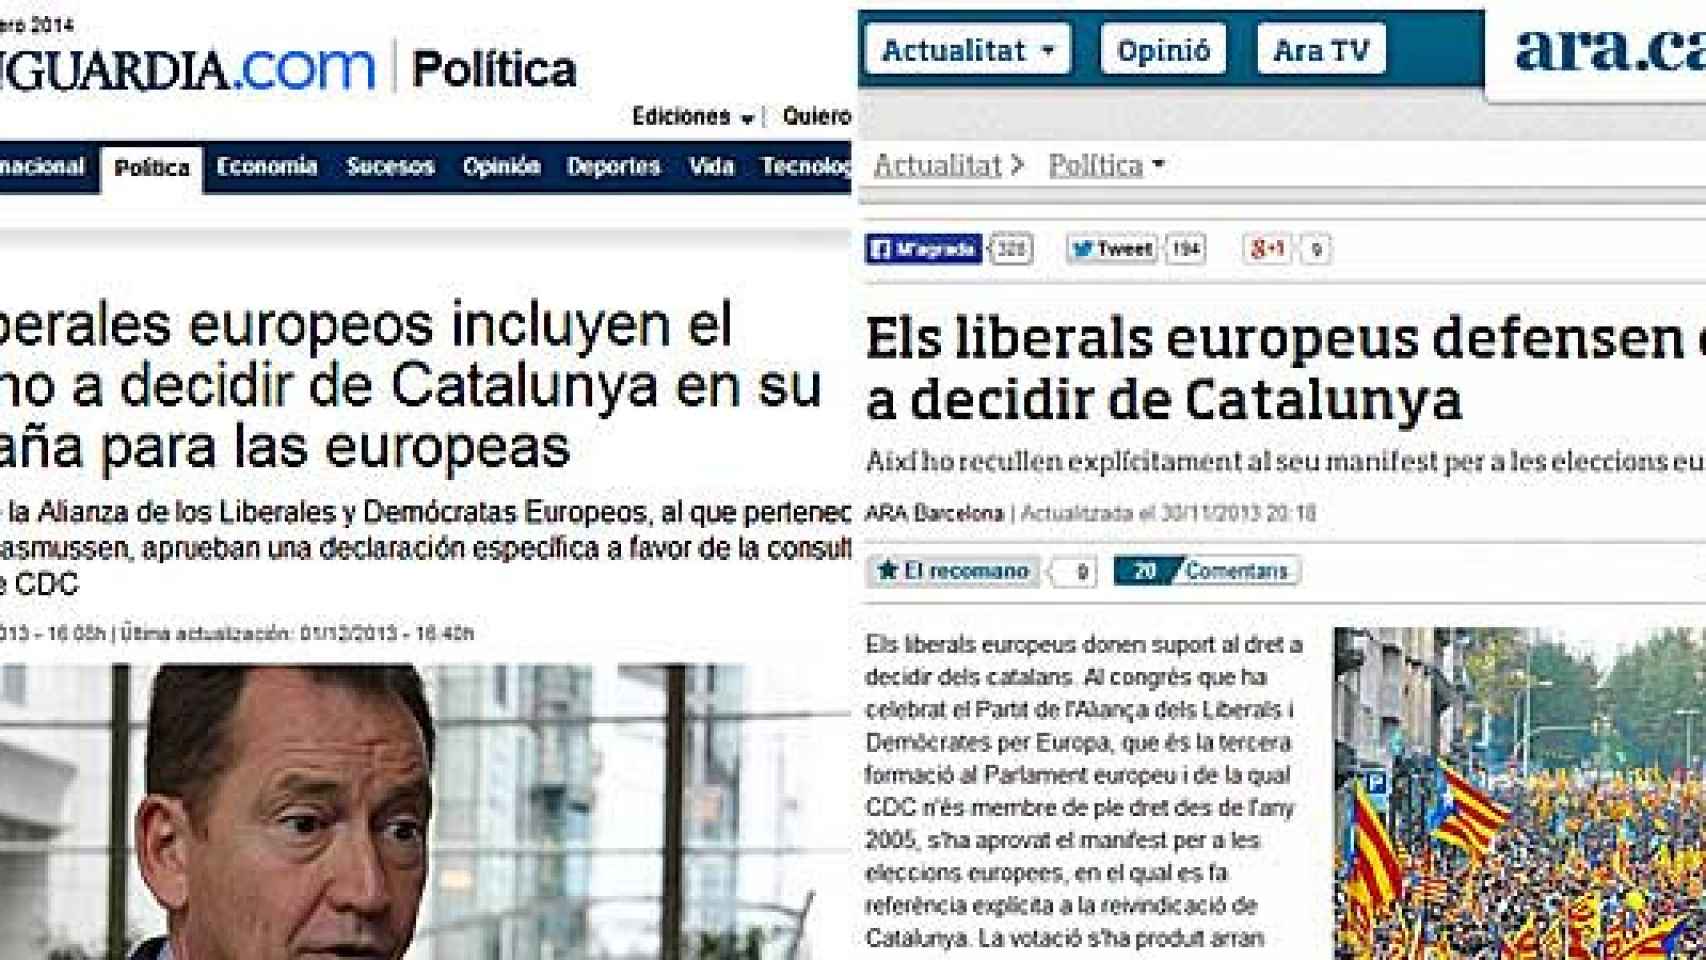 'La Vanguardia' y 'Ara' aseguraron que el manifiesto de la Alianza de los Liberales y Demócratas Europeos (ALDE) de cara a las elecciones europeas de mayo recogía explícitamente el derecho a decidir de Cataluña.